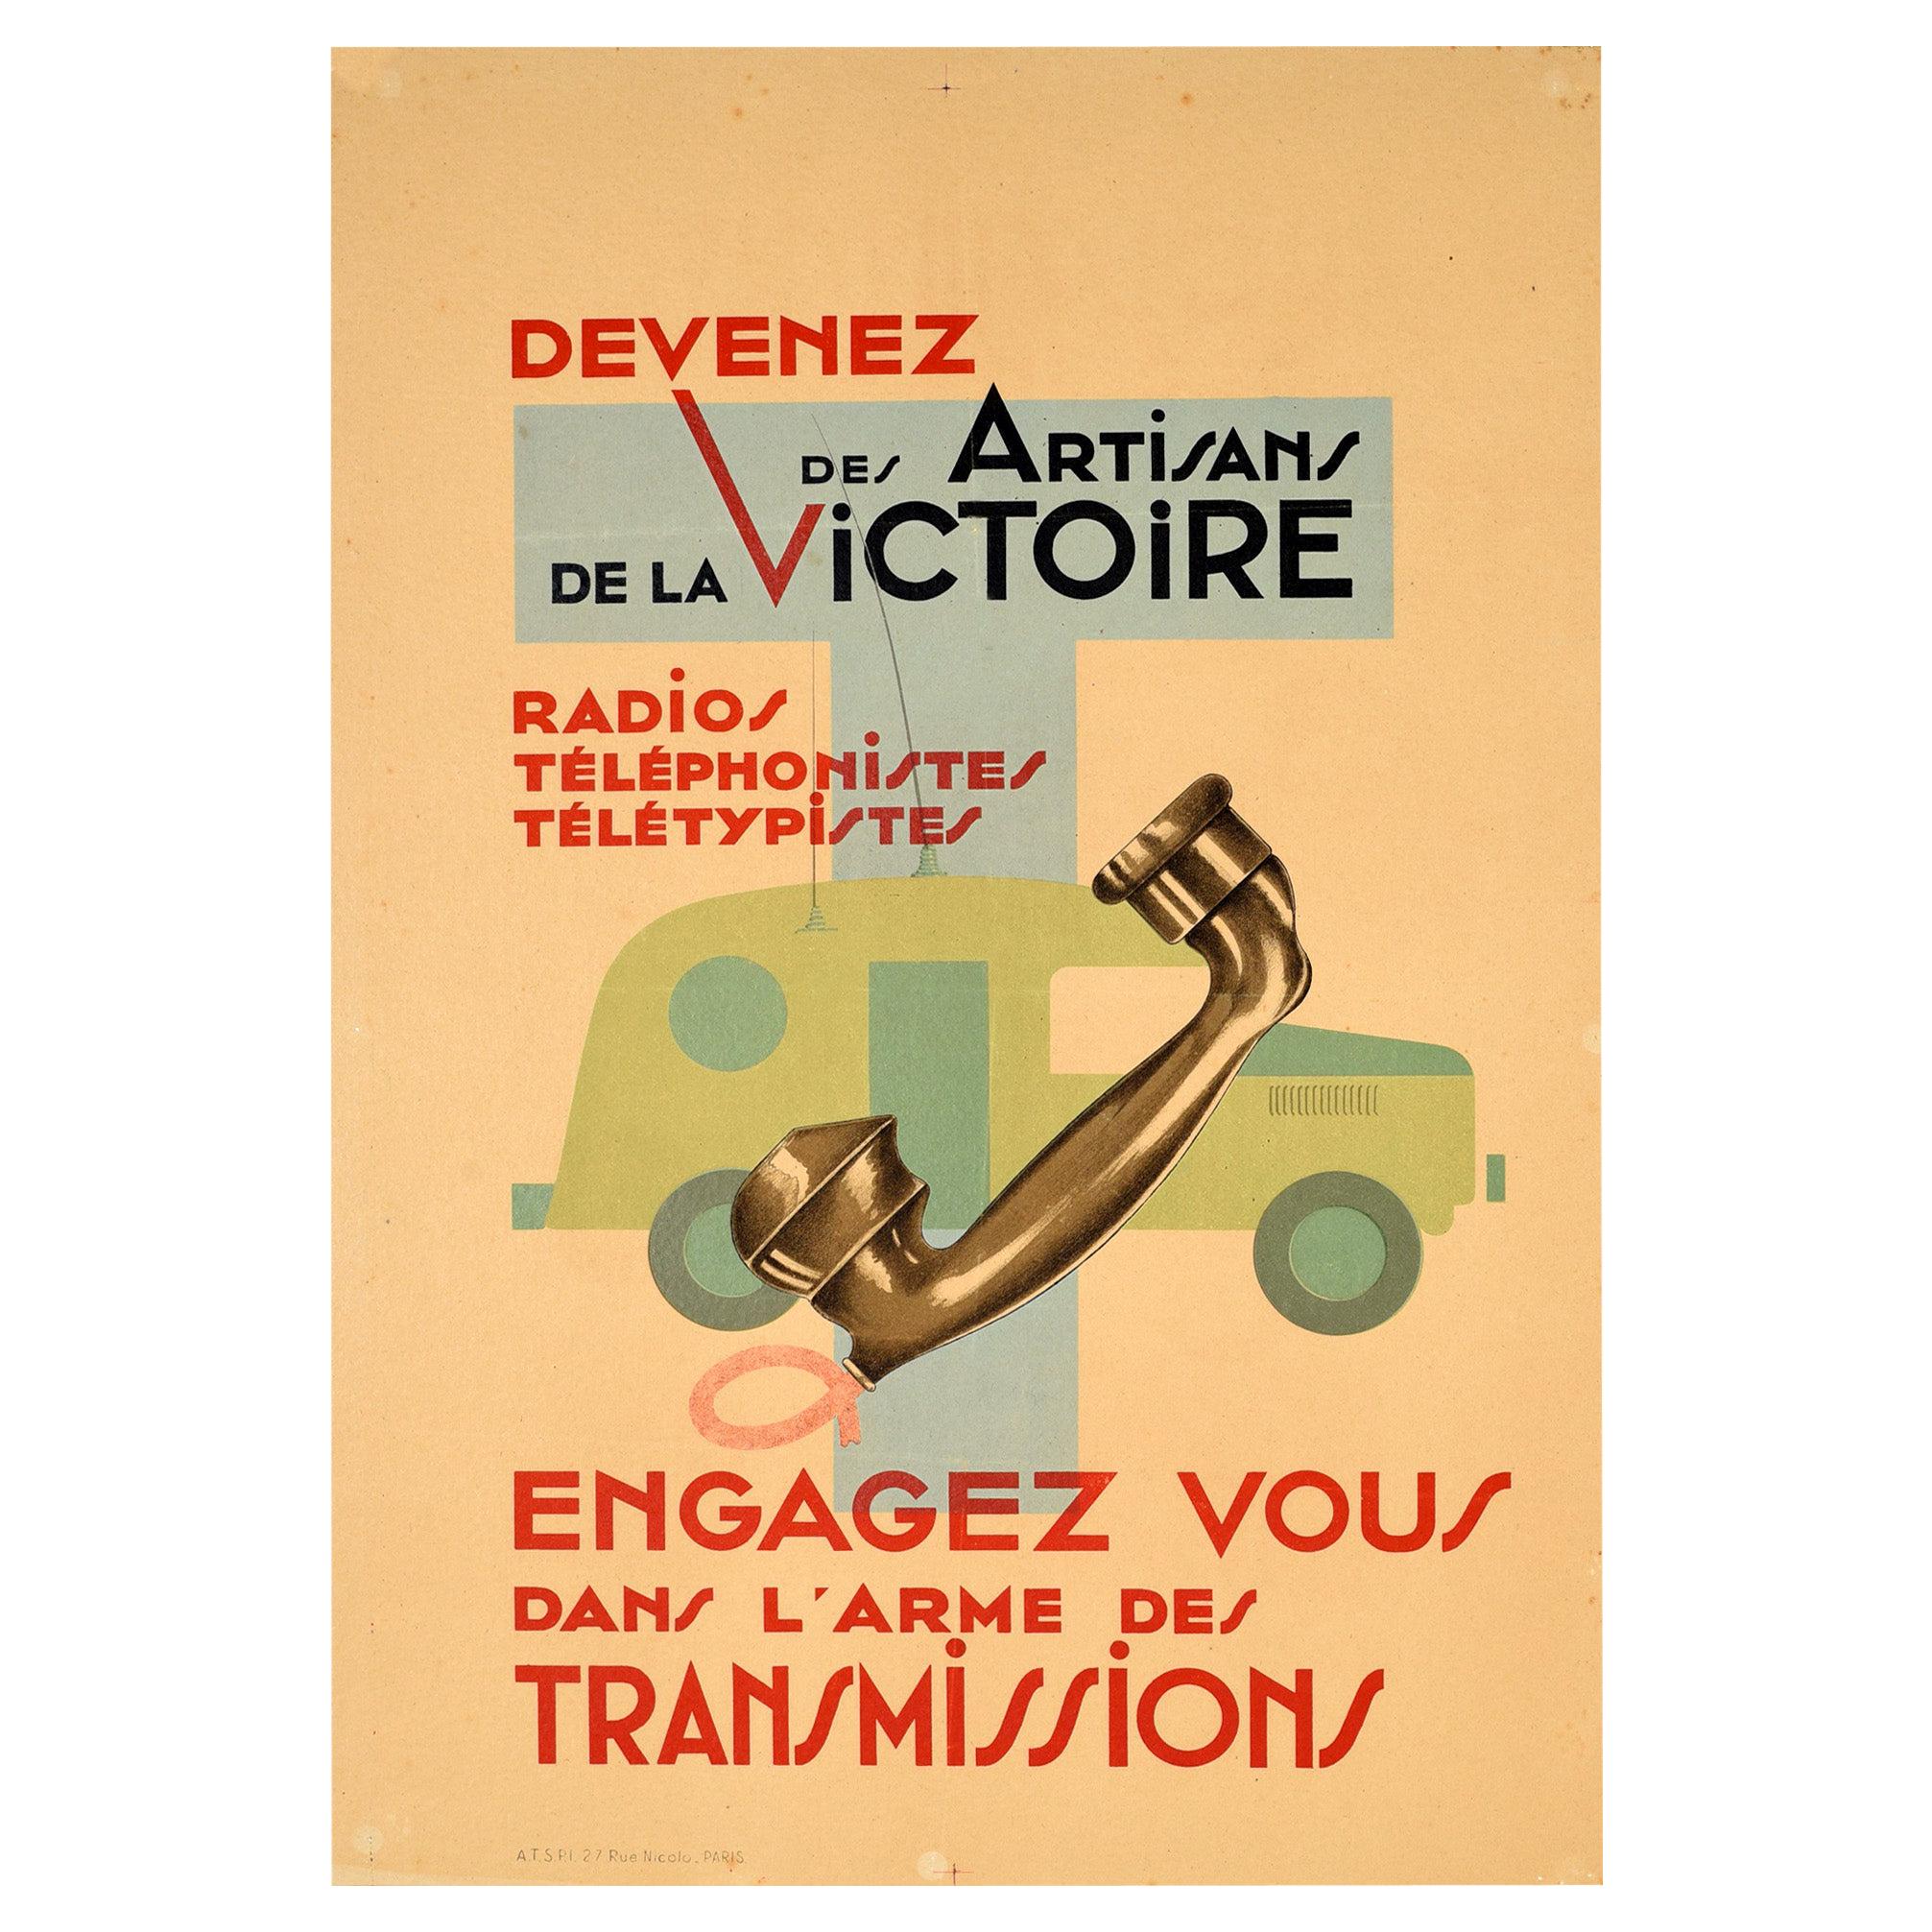 Affiche rétro originale de l'armée française, Signal Corps, communications téléphoniques par radio et téléphone